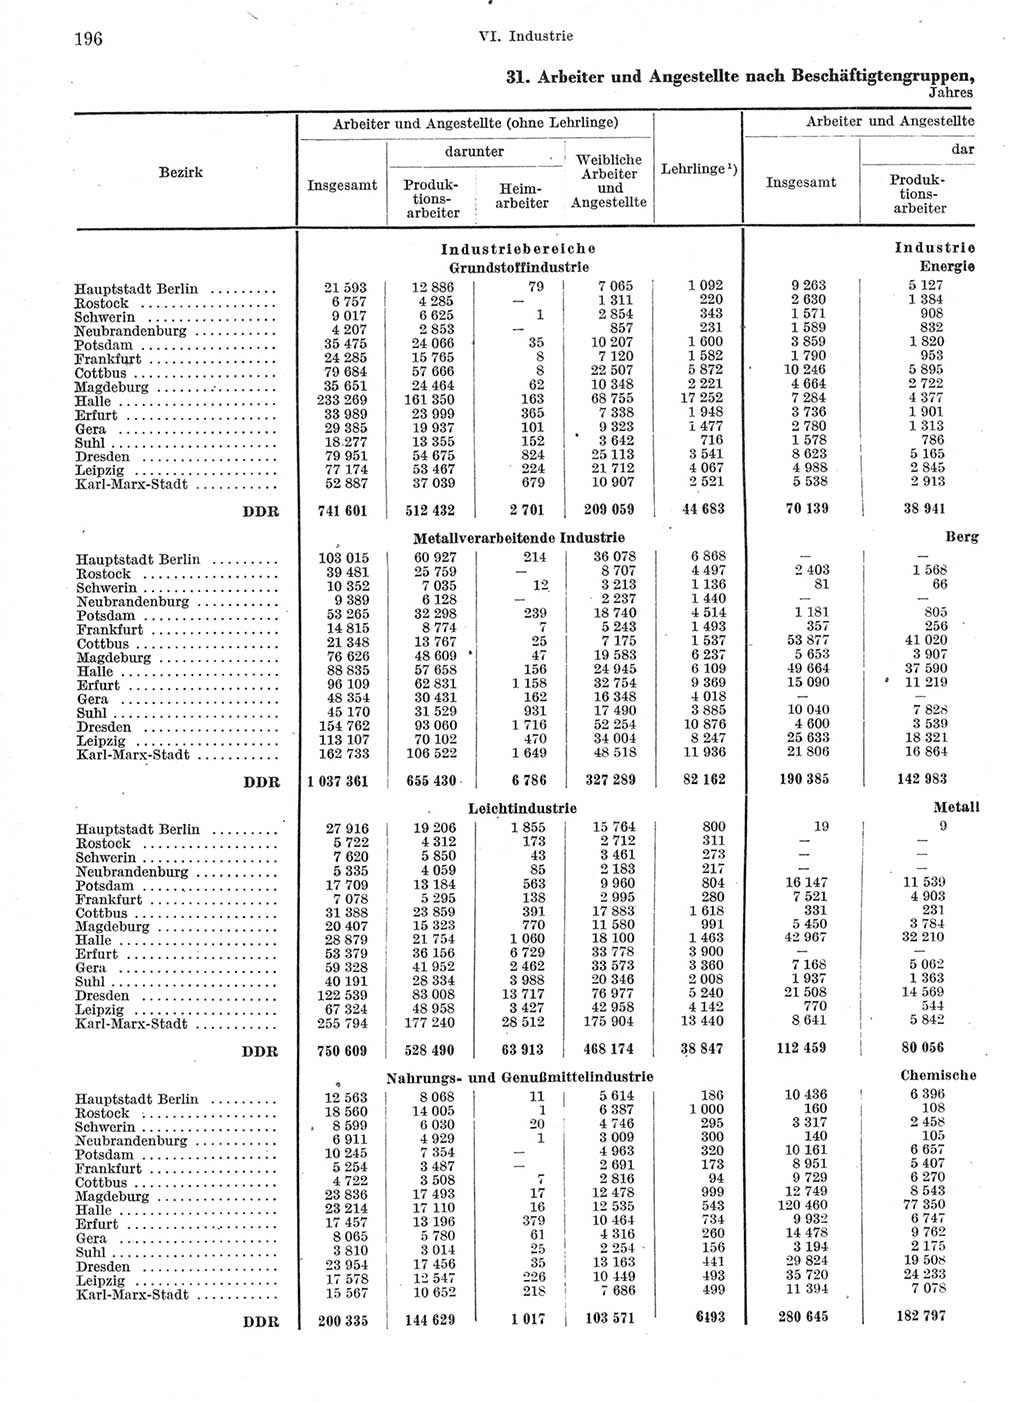 Statistisches Jahrbuch der Deutschen Demokratischen Republik (DDR) 1966, Seite 196 (Stat. Jb. DDR 1966, S. 196)